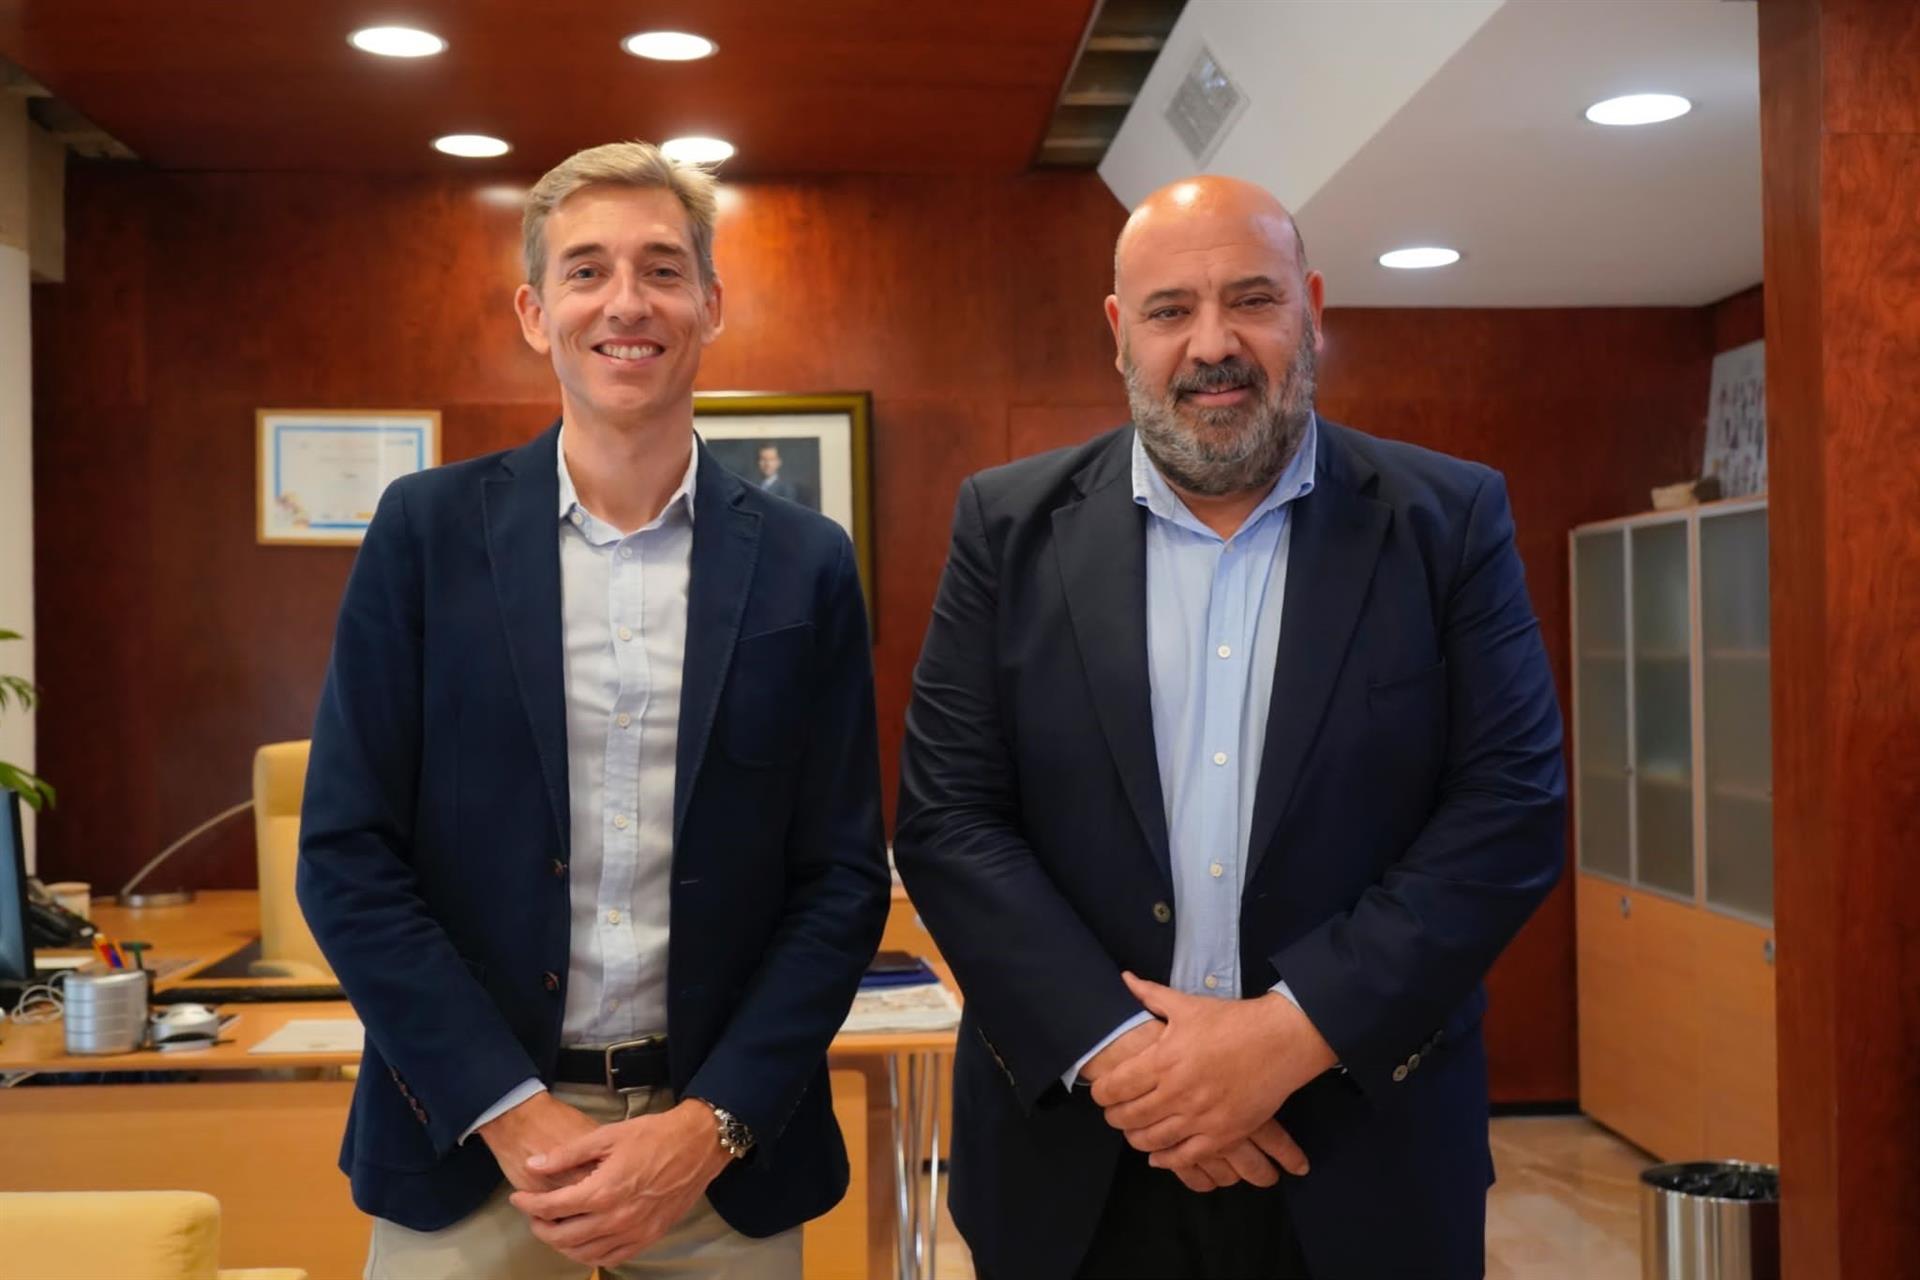 Encuentro del CEO del RCD Mallorca, Alfonso Díaz, y el alcalde de Palma, Jaime Martínez, en el Ayuntamiento de Palma. - AYUNTAMIENTO DE PALMA